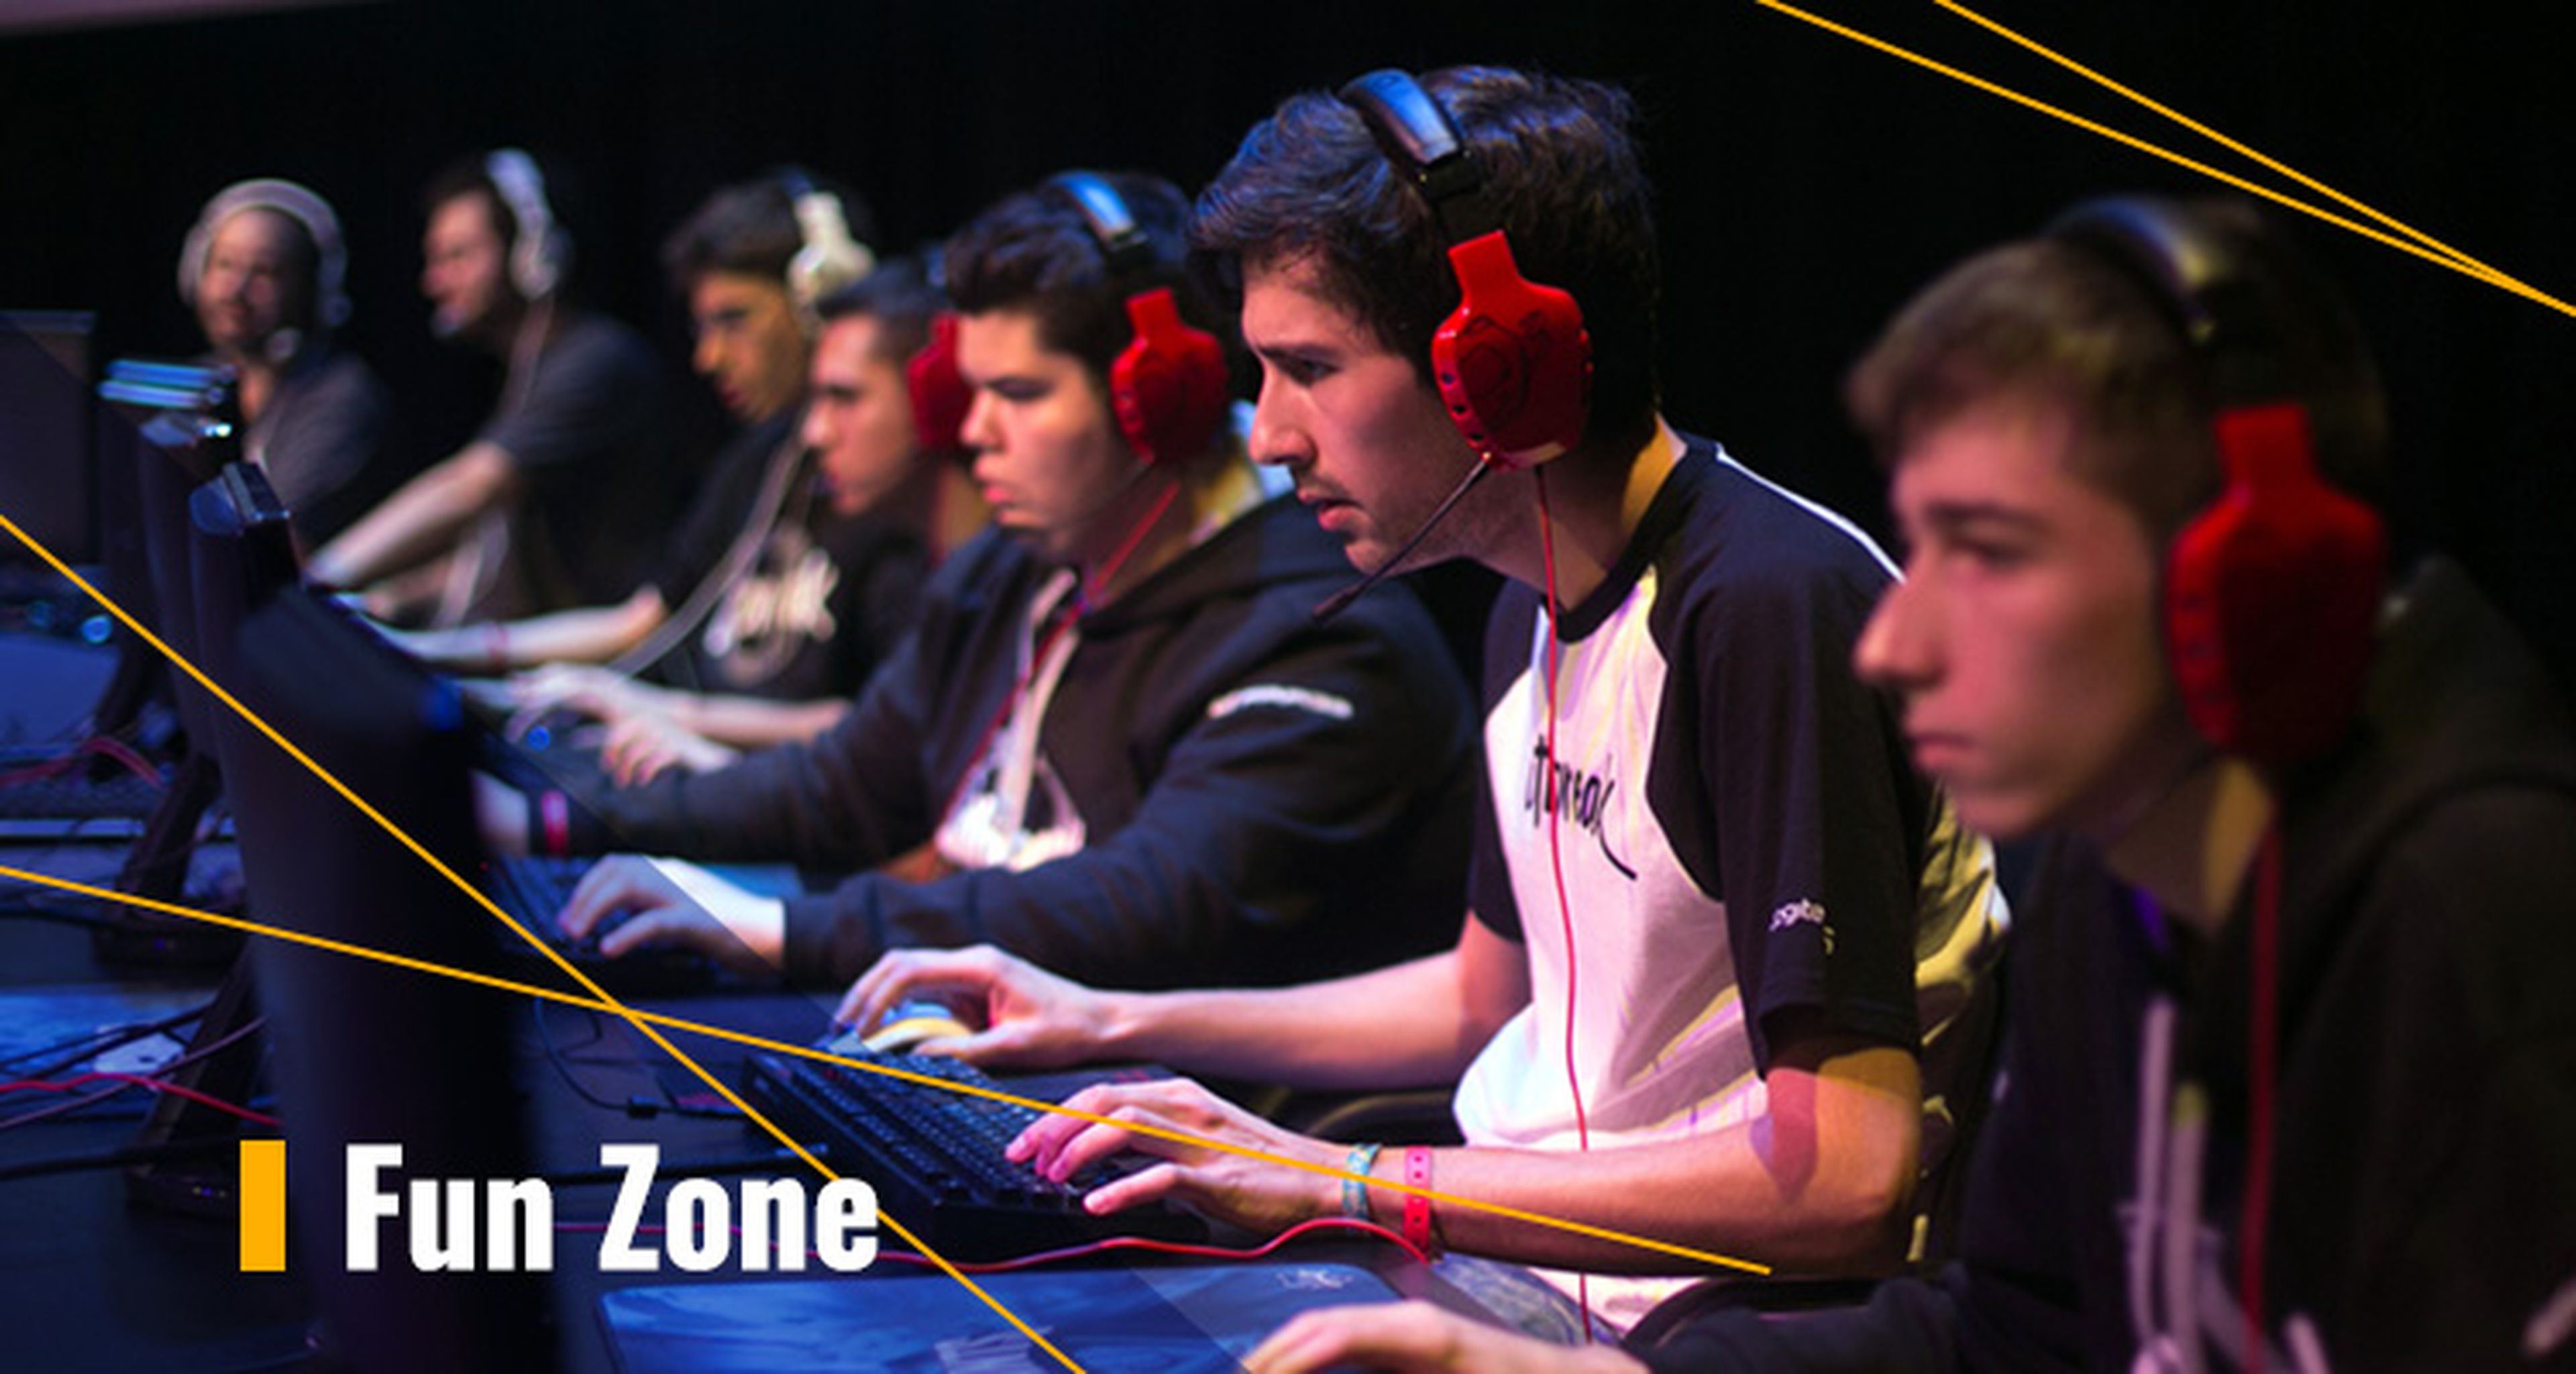 La Fun Zone albergará el mayor espectáculo de e-sports de la temporada.